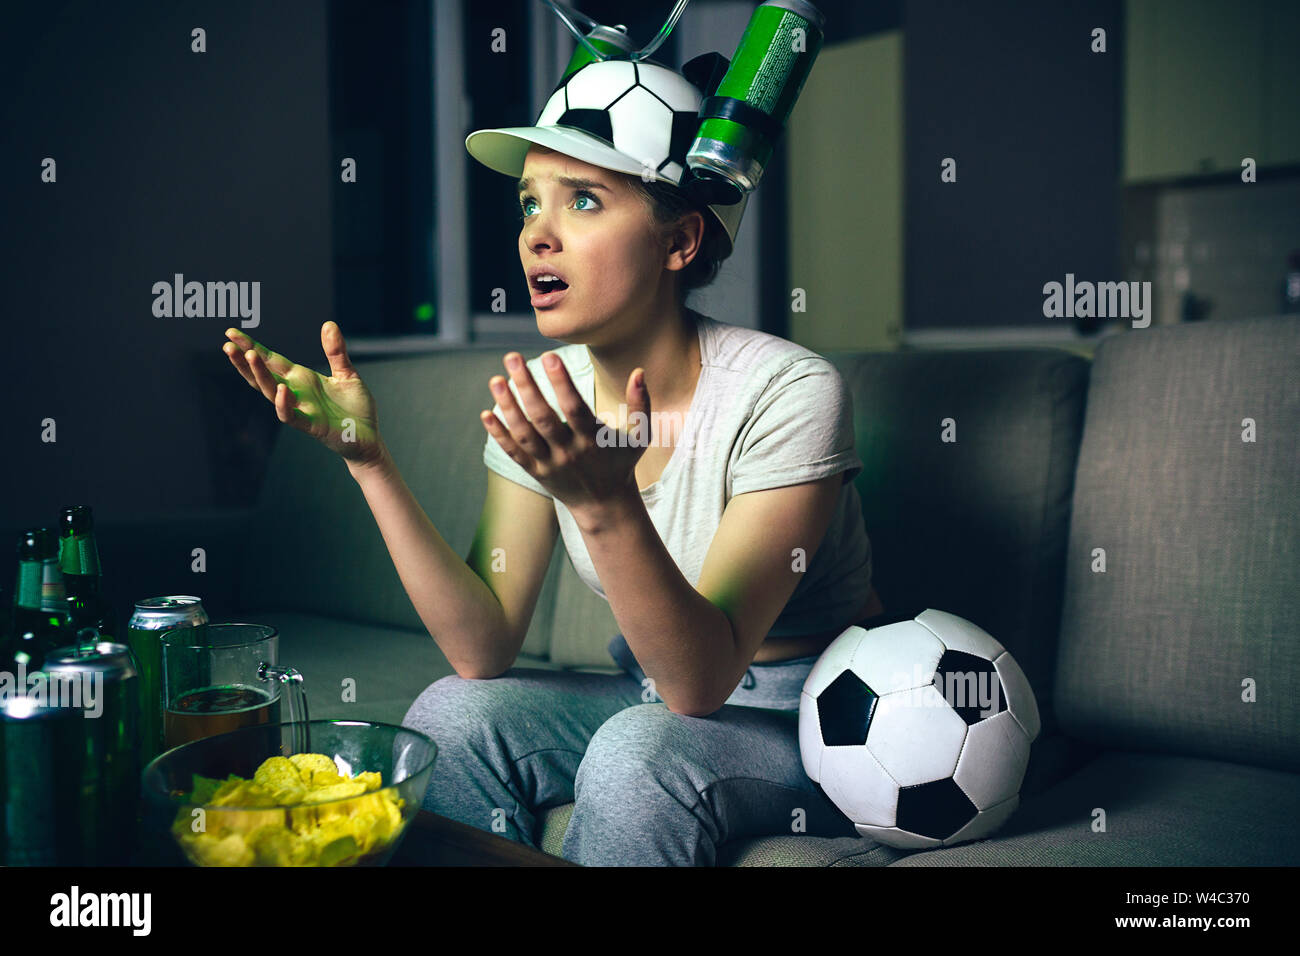 Watching Smart Tv Translation Of Football Game. Banco de Imagens Royalty  Free, Ilustrações, Imagens e Banco de Imagens. Image 59338018.